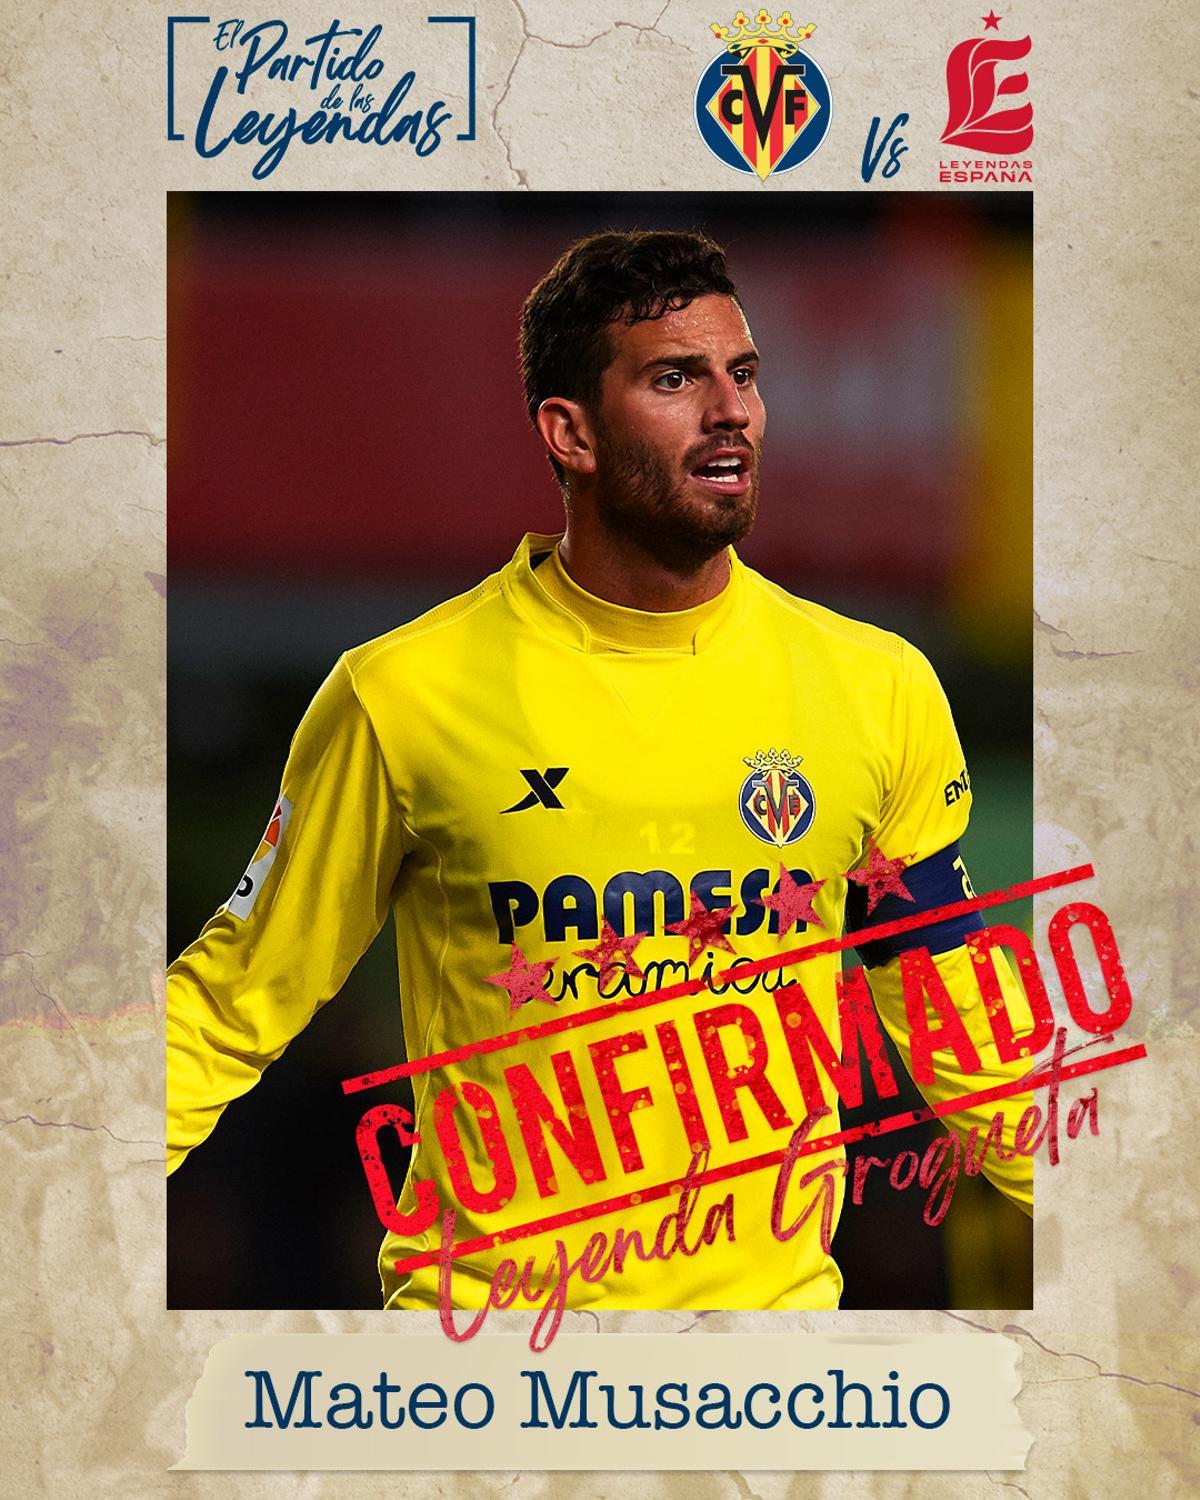 Mateo Musacchio jugará el Partido de las Leyendas con el Villarreal CF.